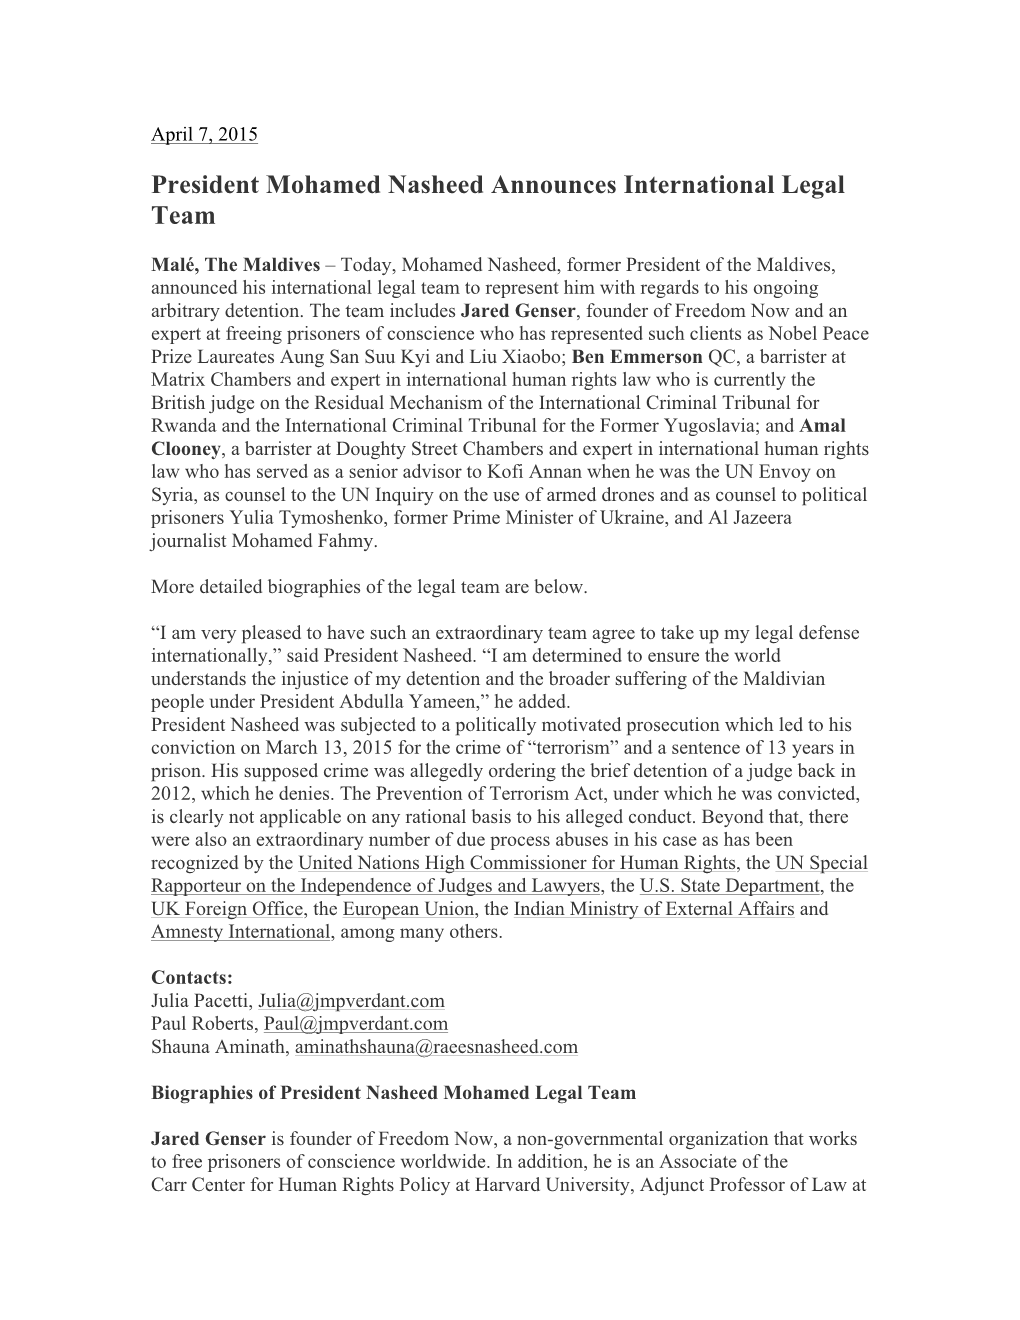 President Mohamed Nasheed Announces International Legal Team